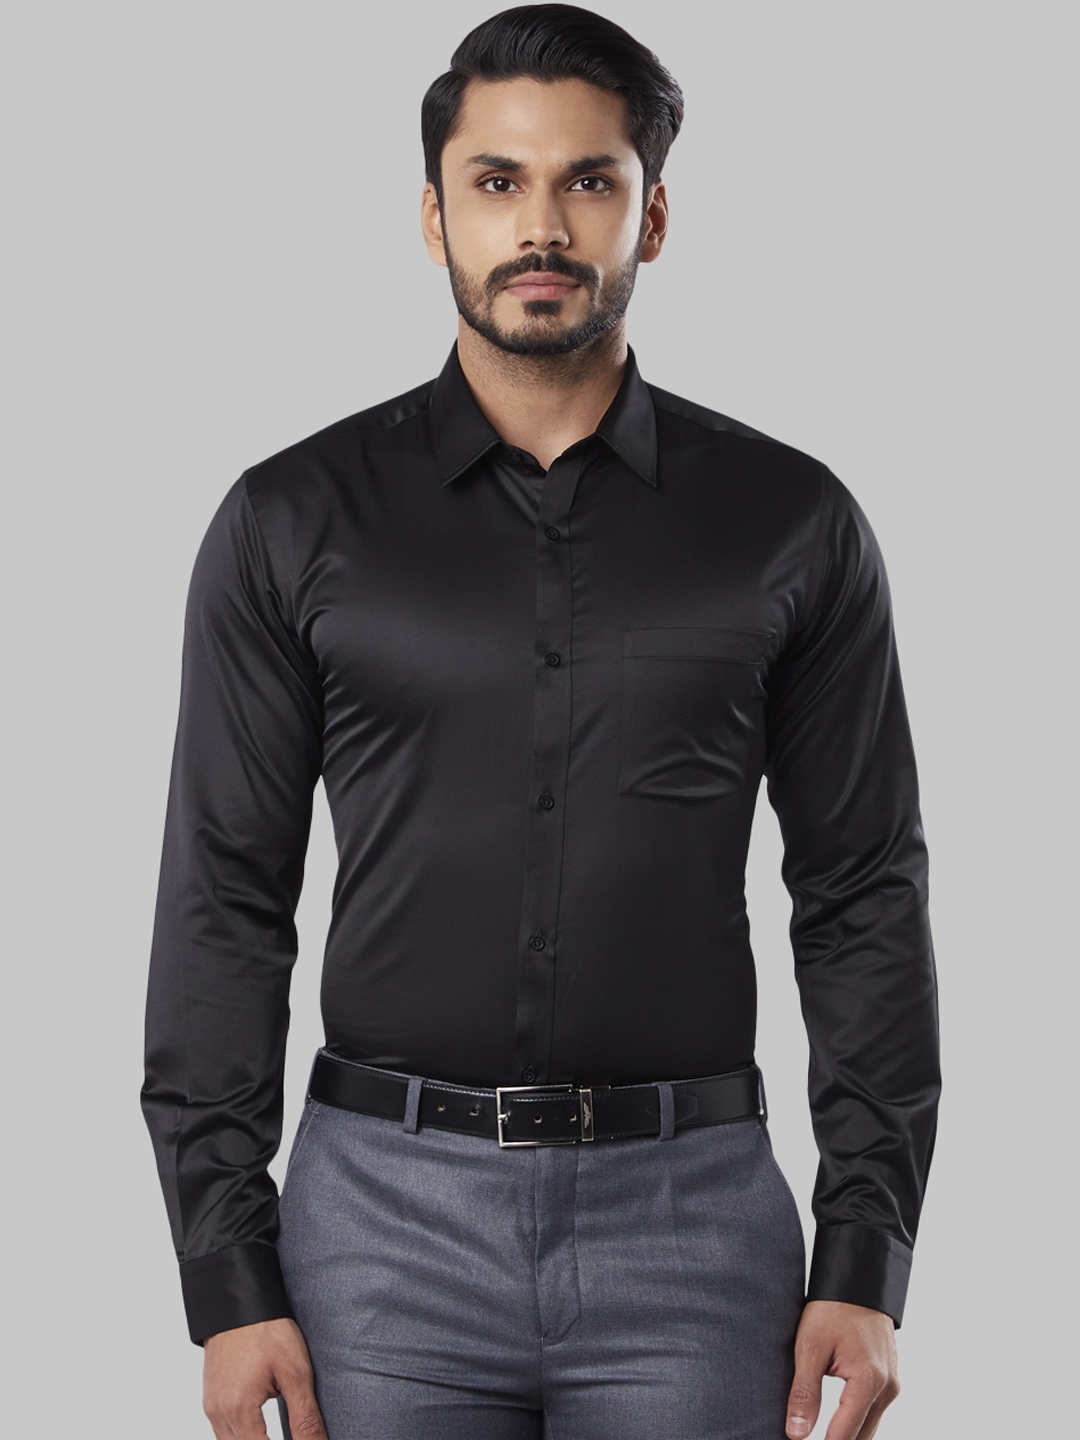 Buy Next Look Men Black Slim Fit Solid Formal Shirt - Shirts for Men ...